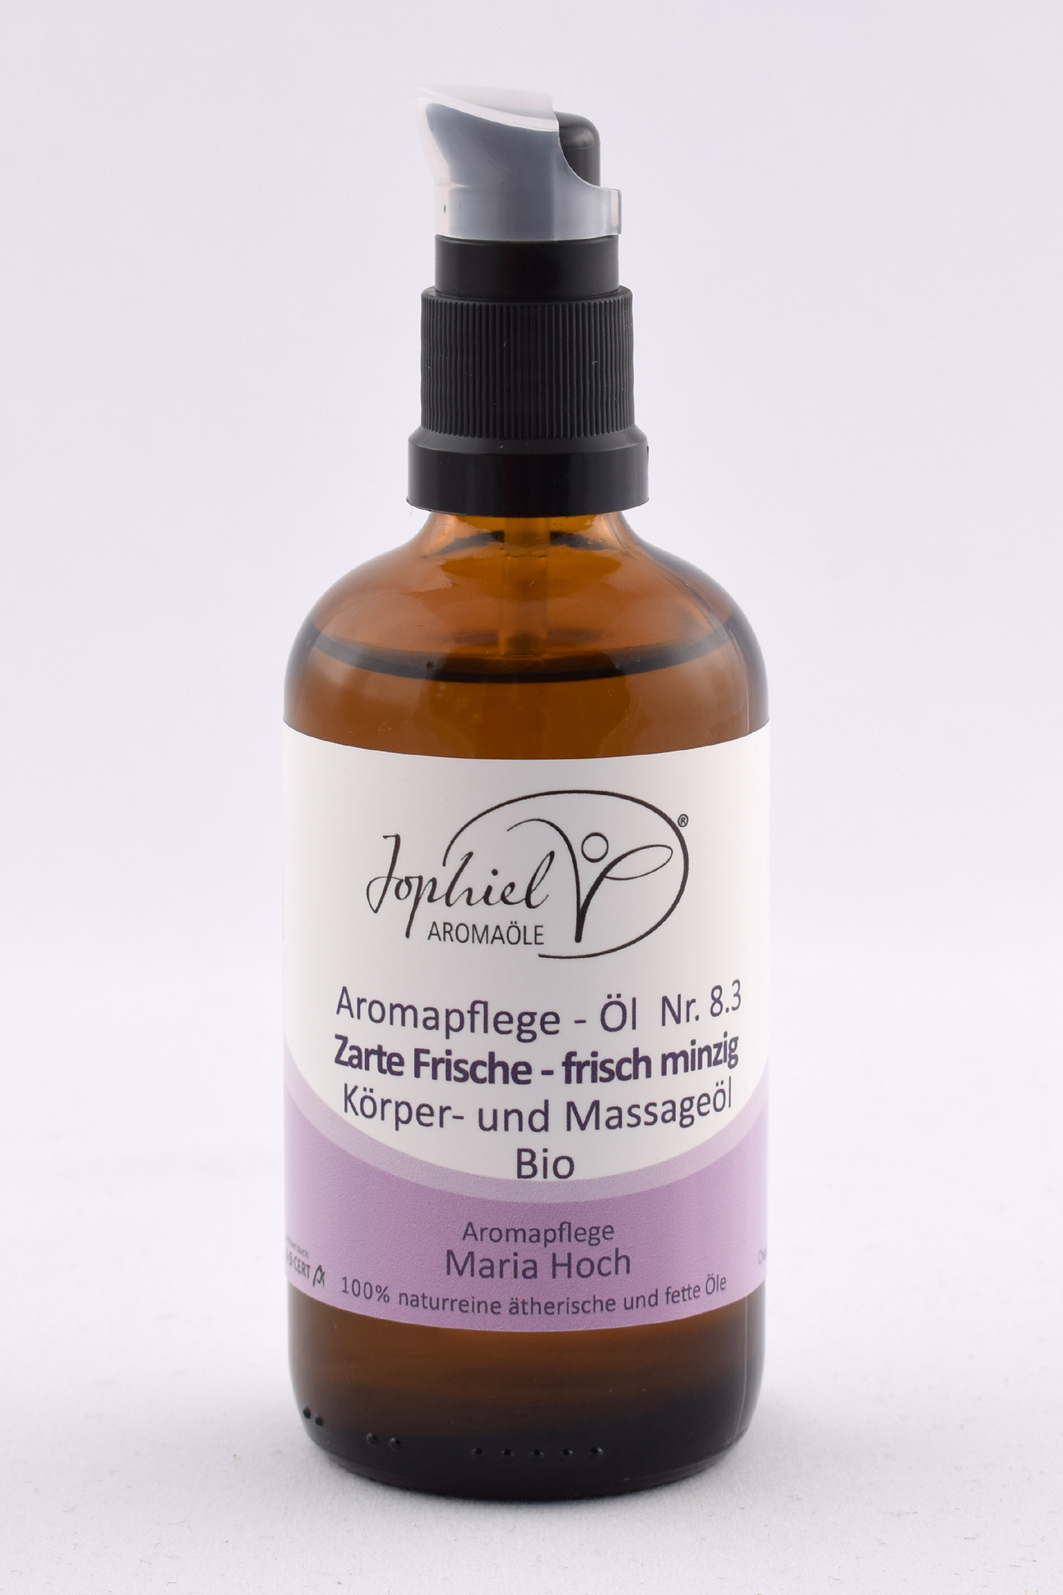 Aromapflege-Öl Nr. 08.3 Zarte Frische Körper- und Massageöle Bio 100 ml